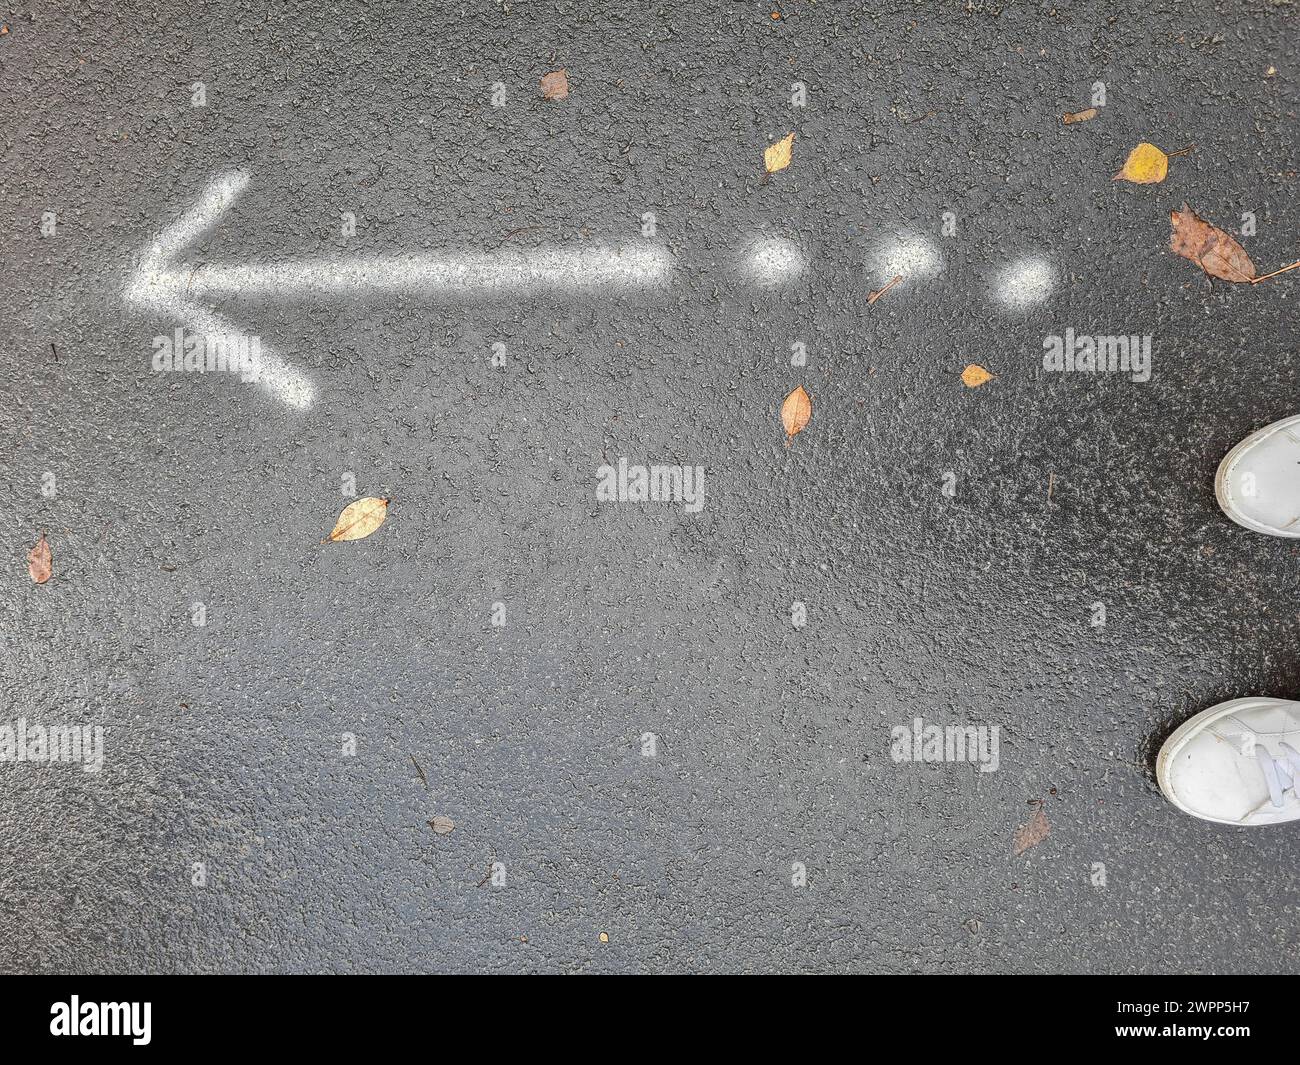 Flecha blanca que apunta a la izquierda y tres puntos blancos en tierra asfáltica gris en la lluvia, carretera empapada de lluvia con señales, Alemania Foto de stock